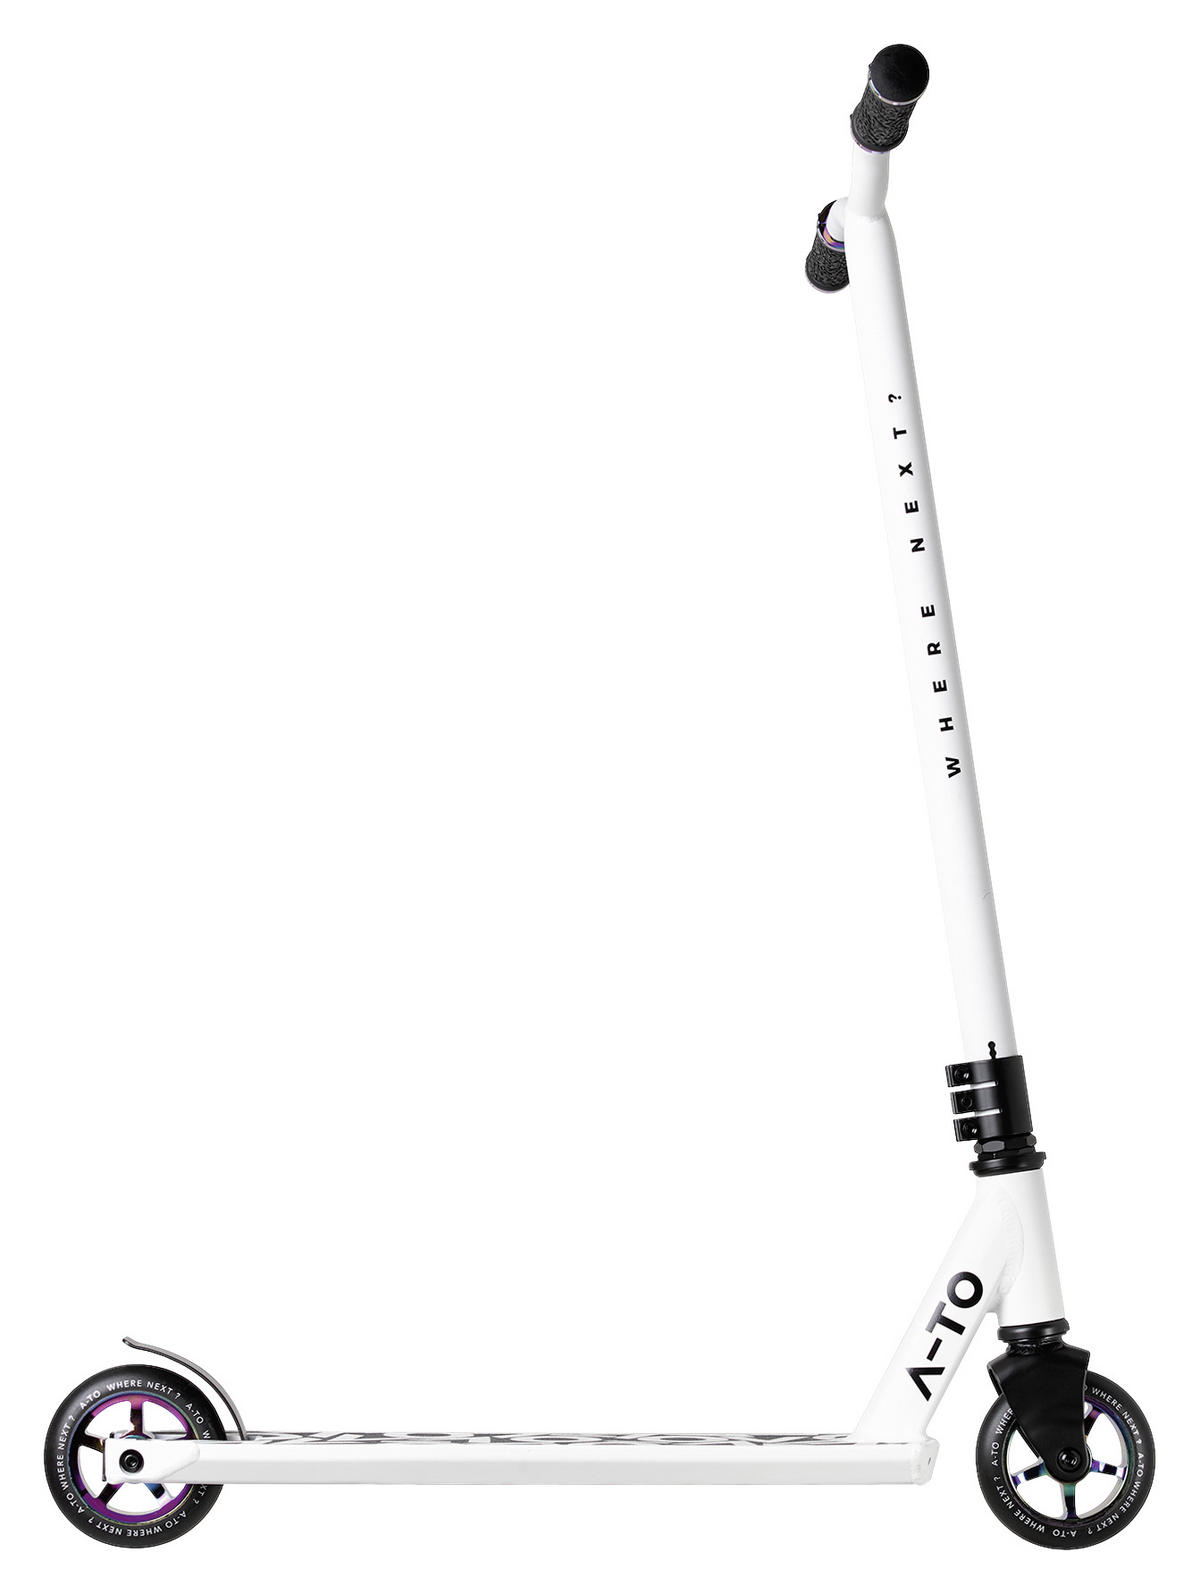 höhenverstellbar Scooter in A-TO Weiß kaufen